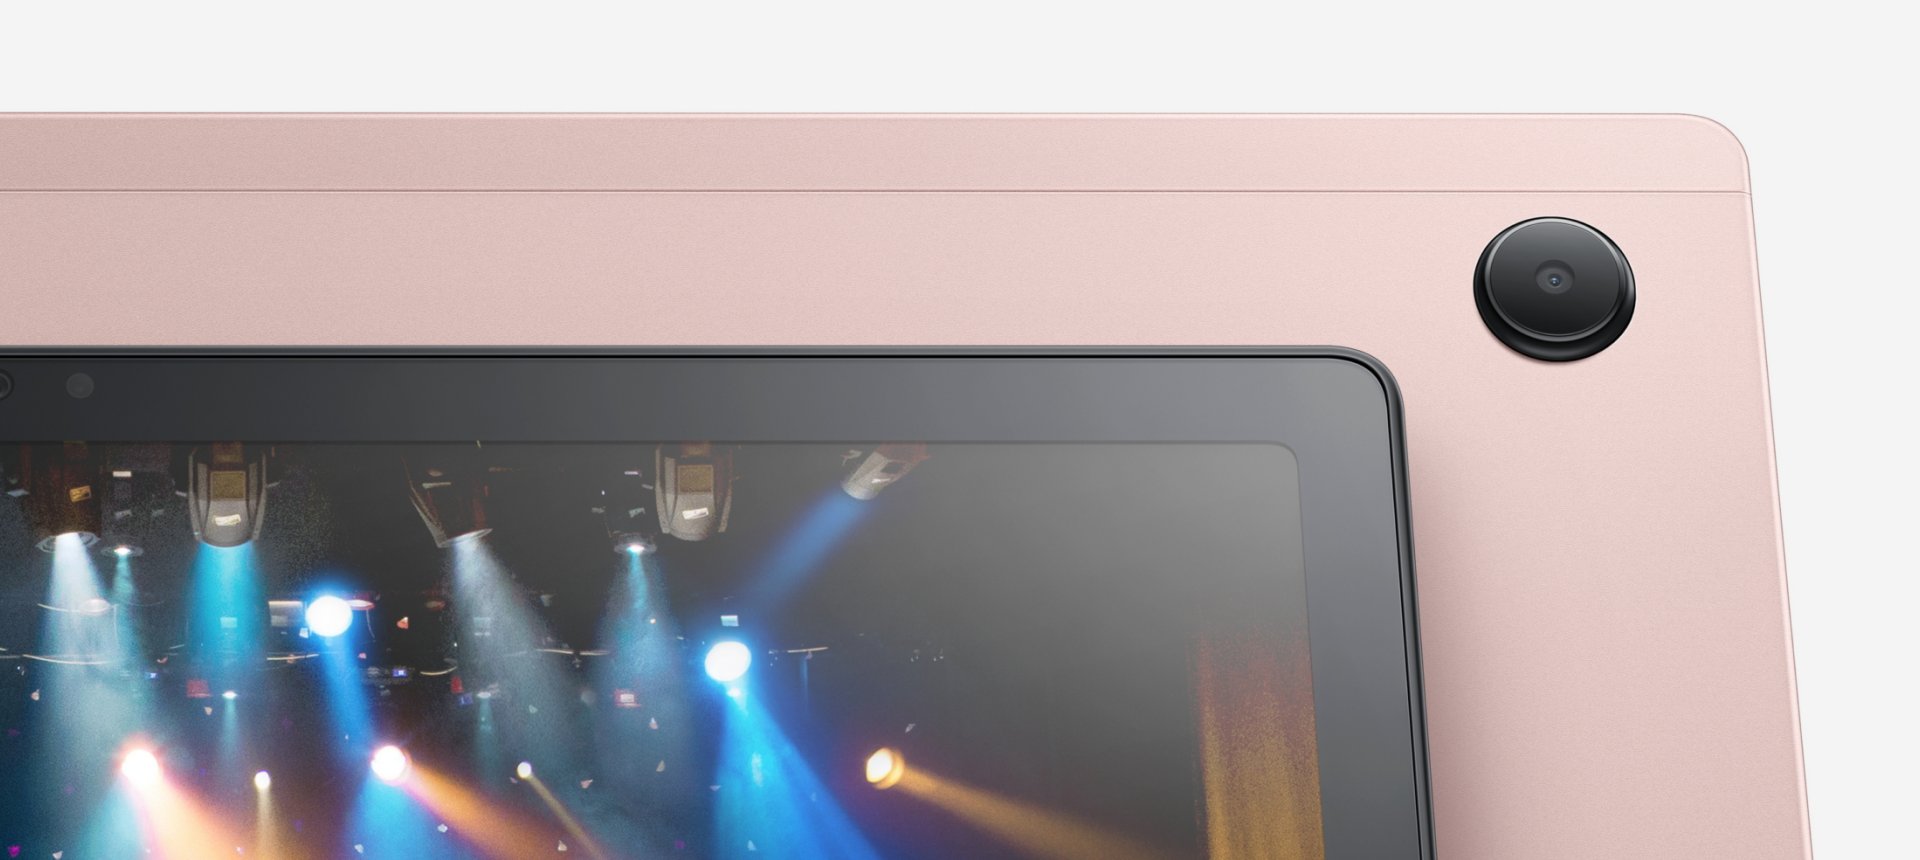 Fire HD 8, la tablette qui ne met le feu à rien du tout